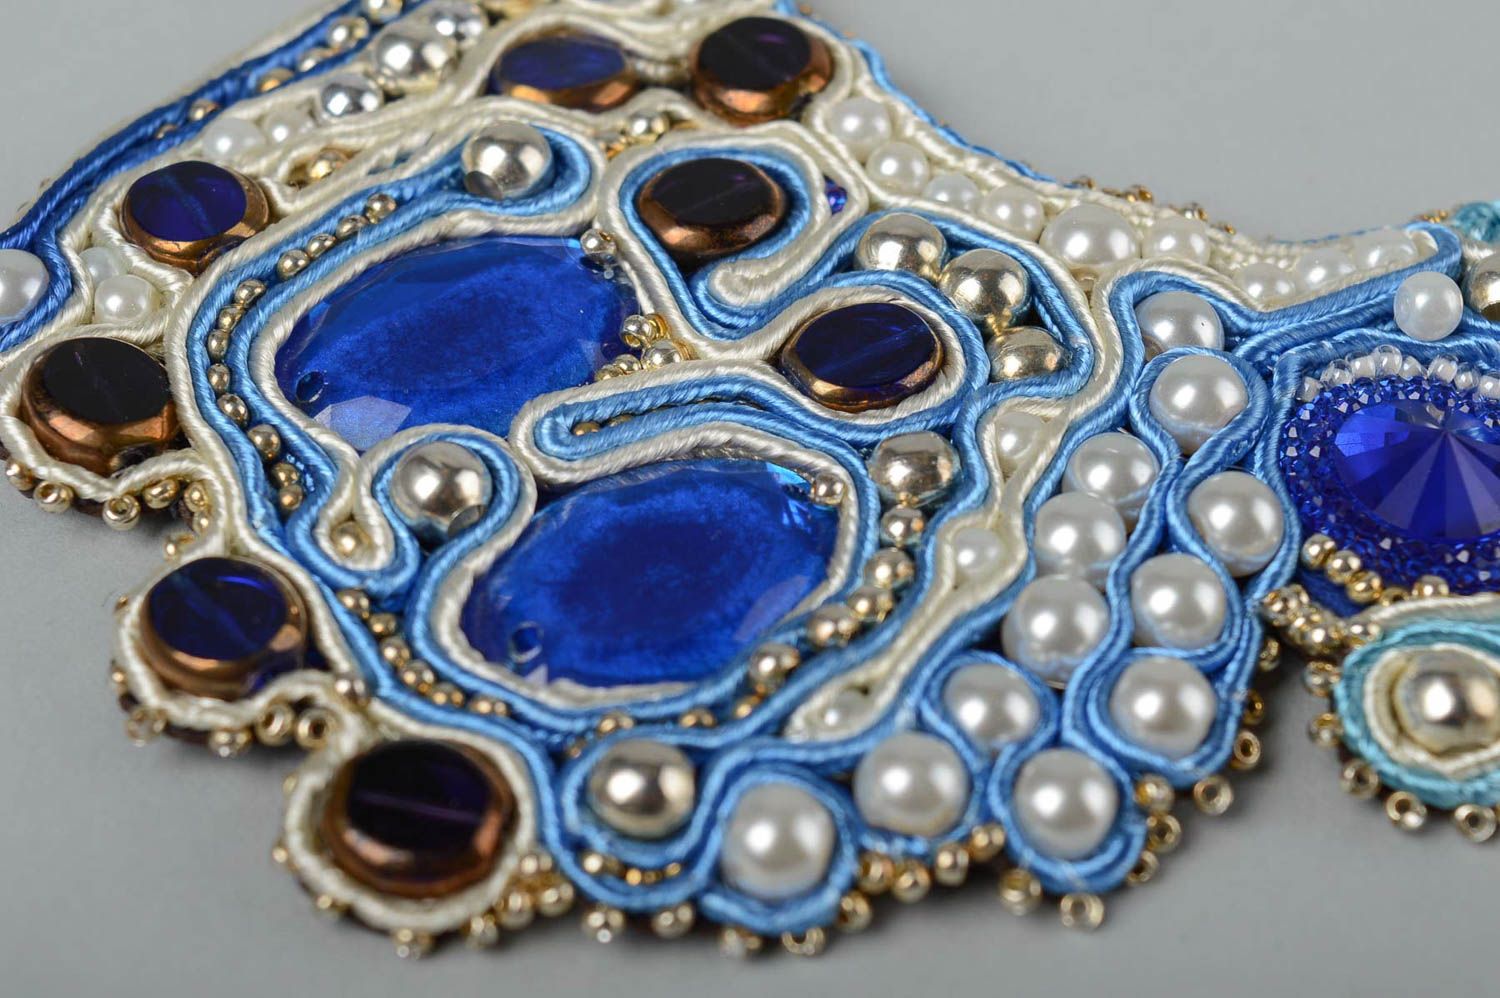 Колье сутажная вышивка хэнд мэйд вышитое ожерелье сутажное колье синее  фото 3